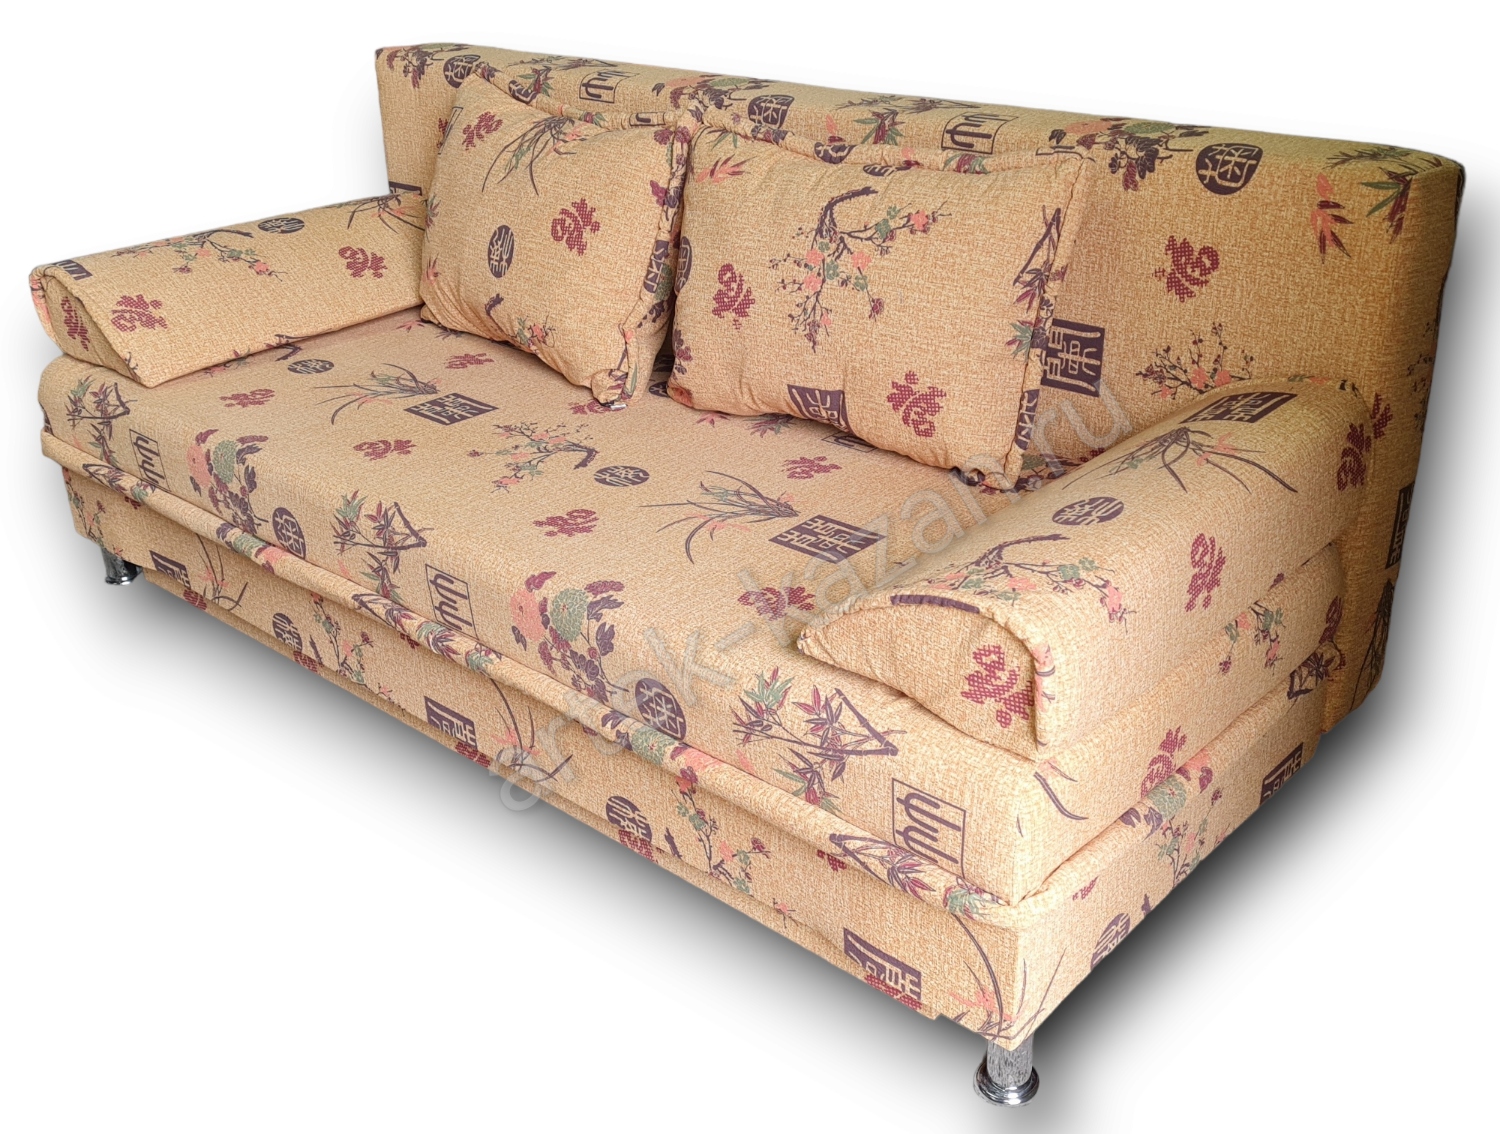 диван еврокнижка Эконом фото № 94. Купить недорогой диван по низкой цене от производителя можно у нас.